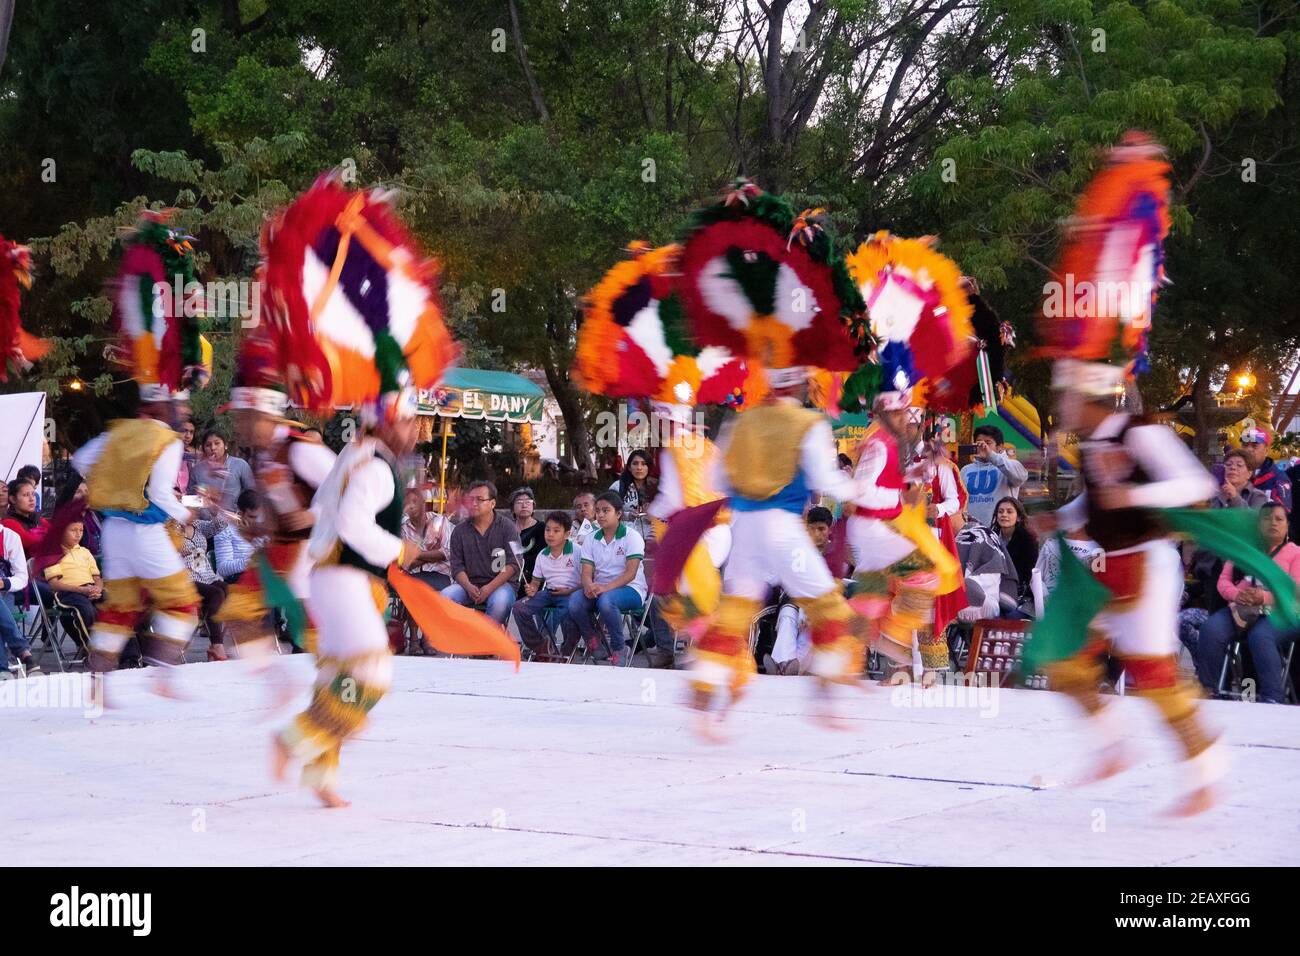 Eine Gruppe von Tänzern auf einer Ausstellung präsentiert verschiedene Indigene Stämme tanzen Bräuche Stockfoto